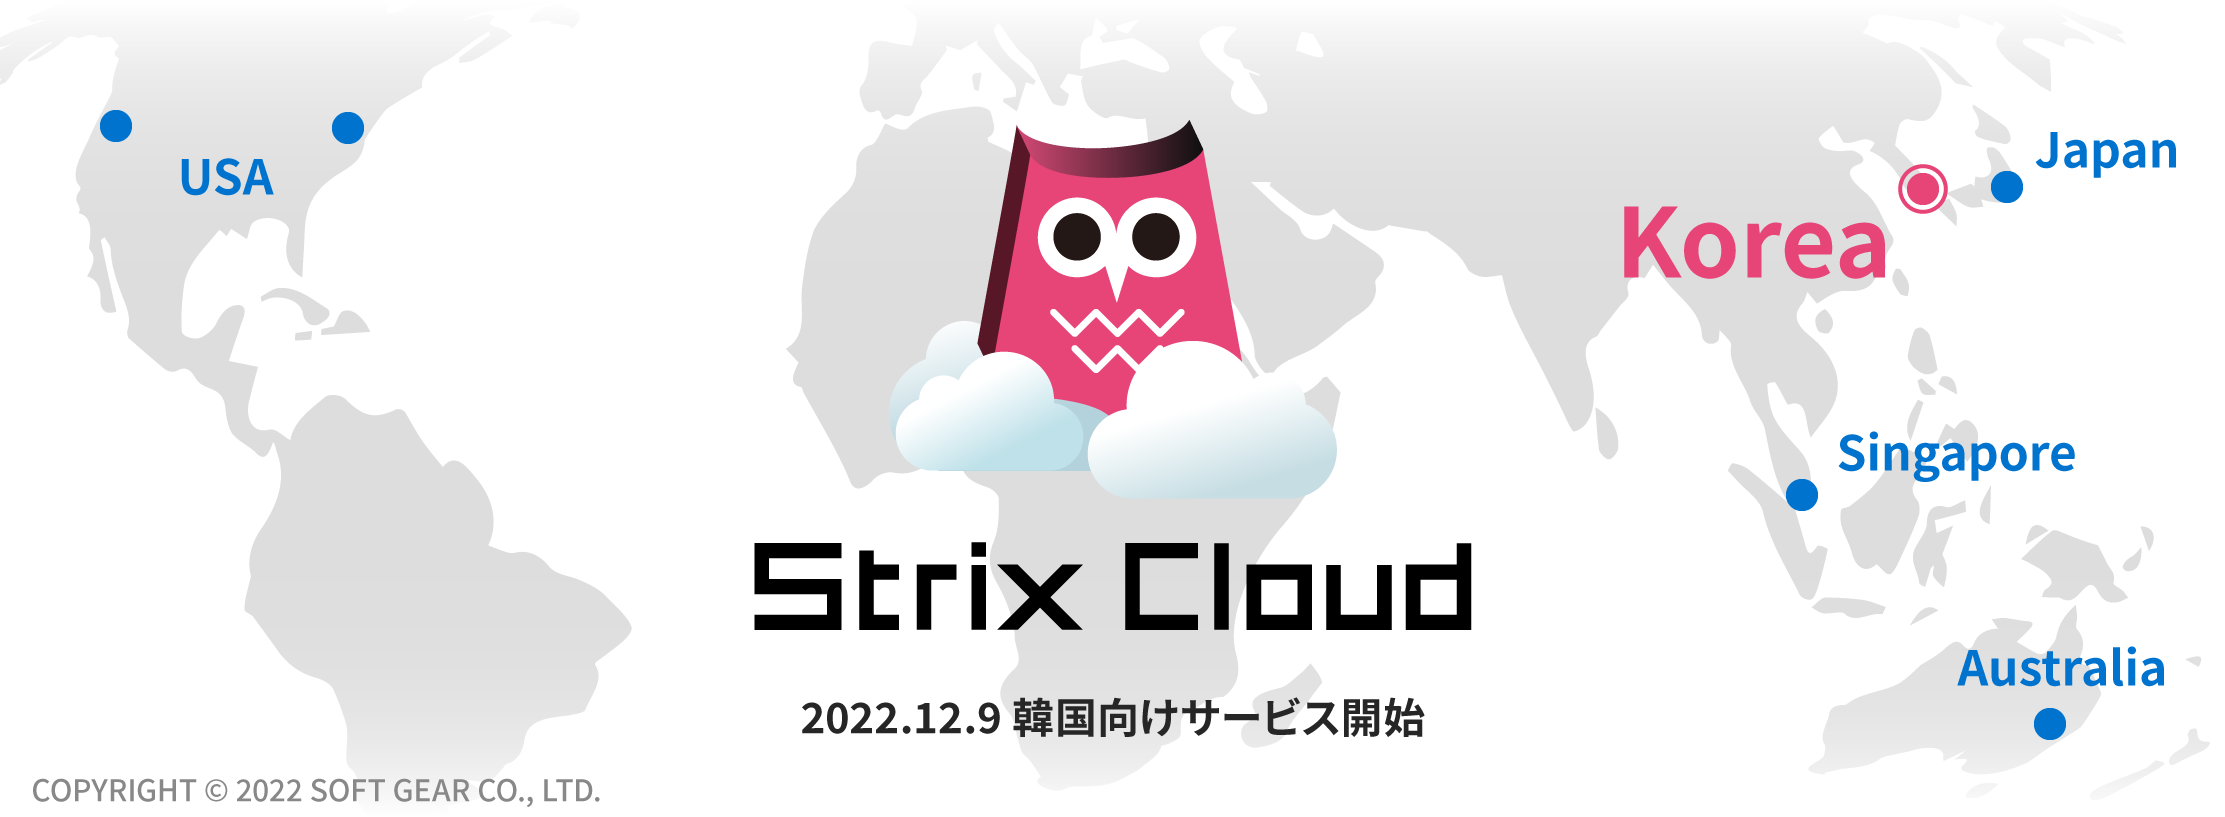 ソフトギア、オンラインゲーム・メタバース開発用
サーバーソリューション「Strix Cloud」の
韓国向けサービスを12月9日(金)に開始